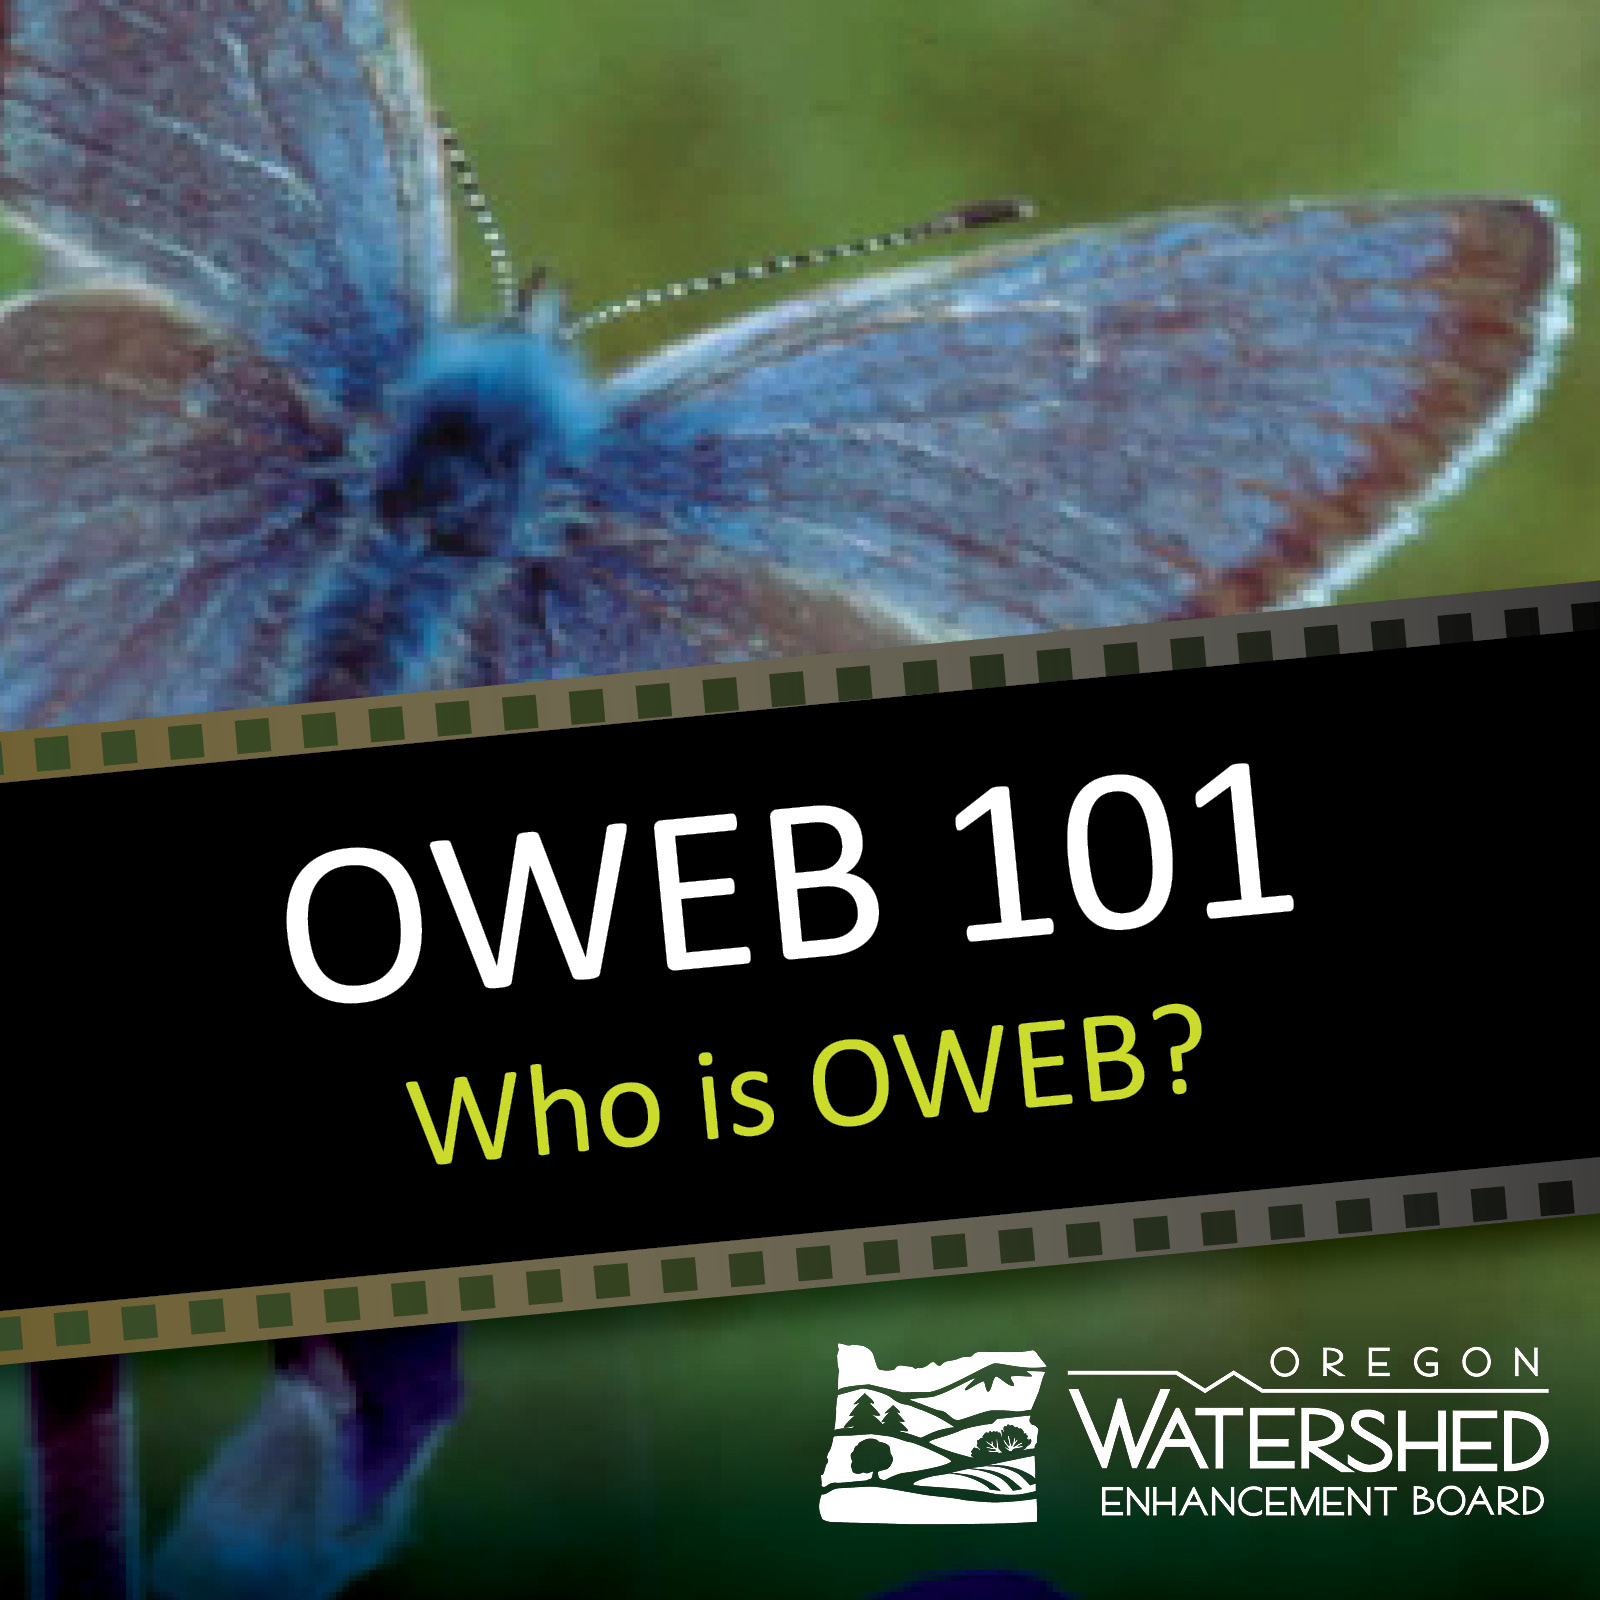 OWEB 101 video